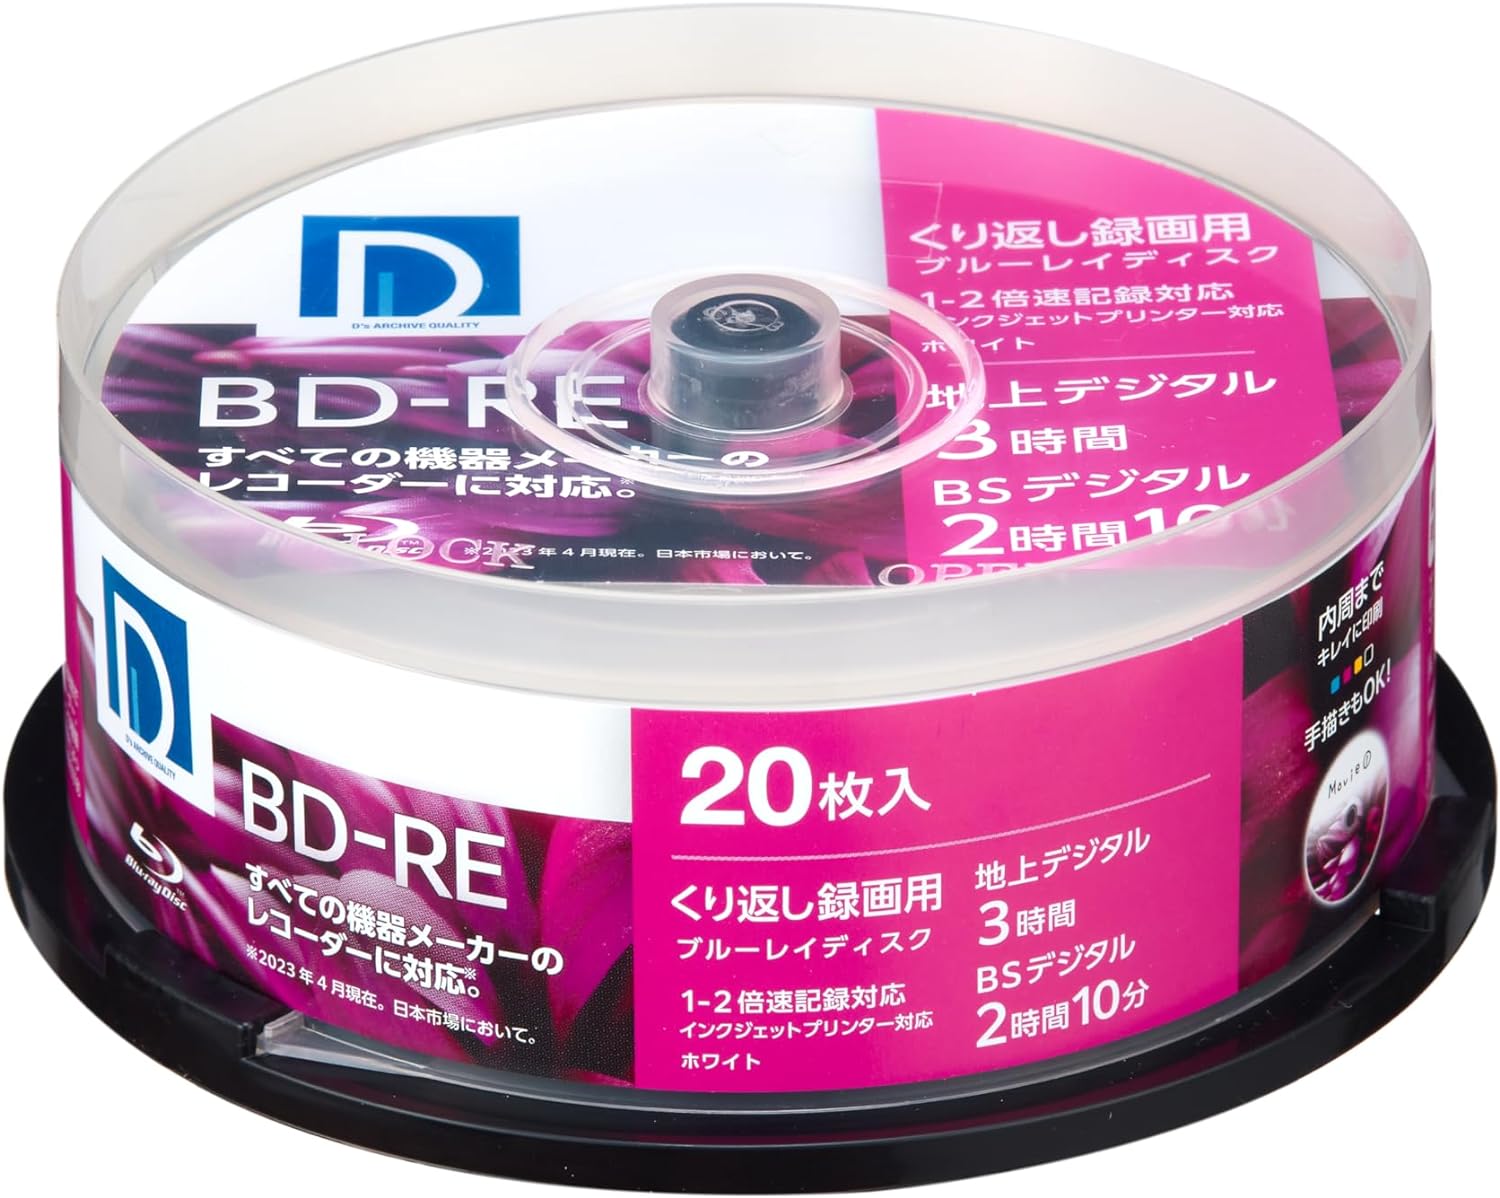 ディーズ・クオリティー D's QUALITY 録画用 BD-RE 25GB くり返し録画用 1-2倍速 ホワイトレーベル 20枚 BE25DP.20SP